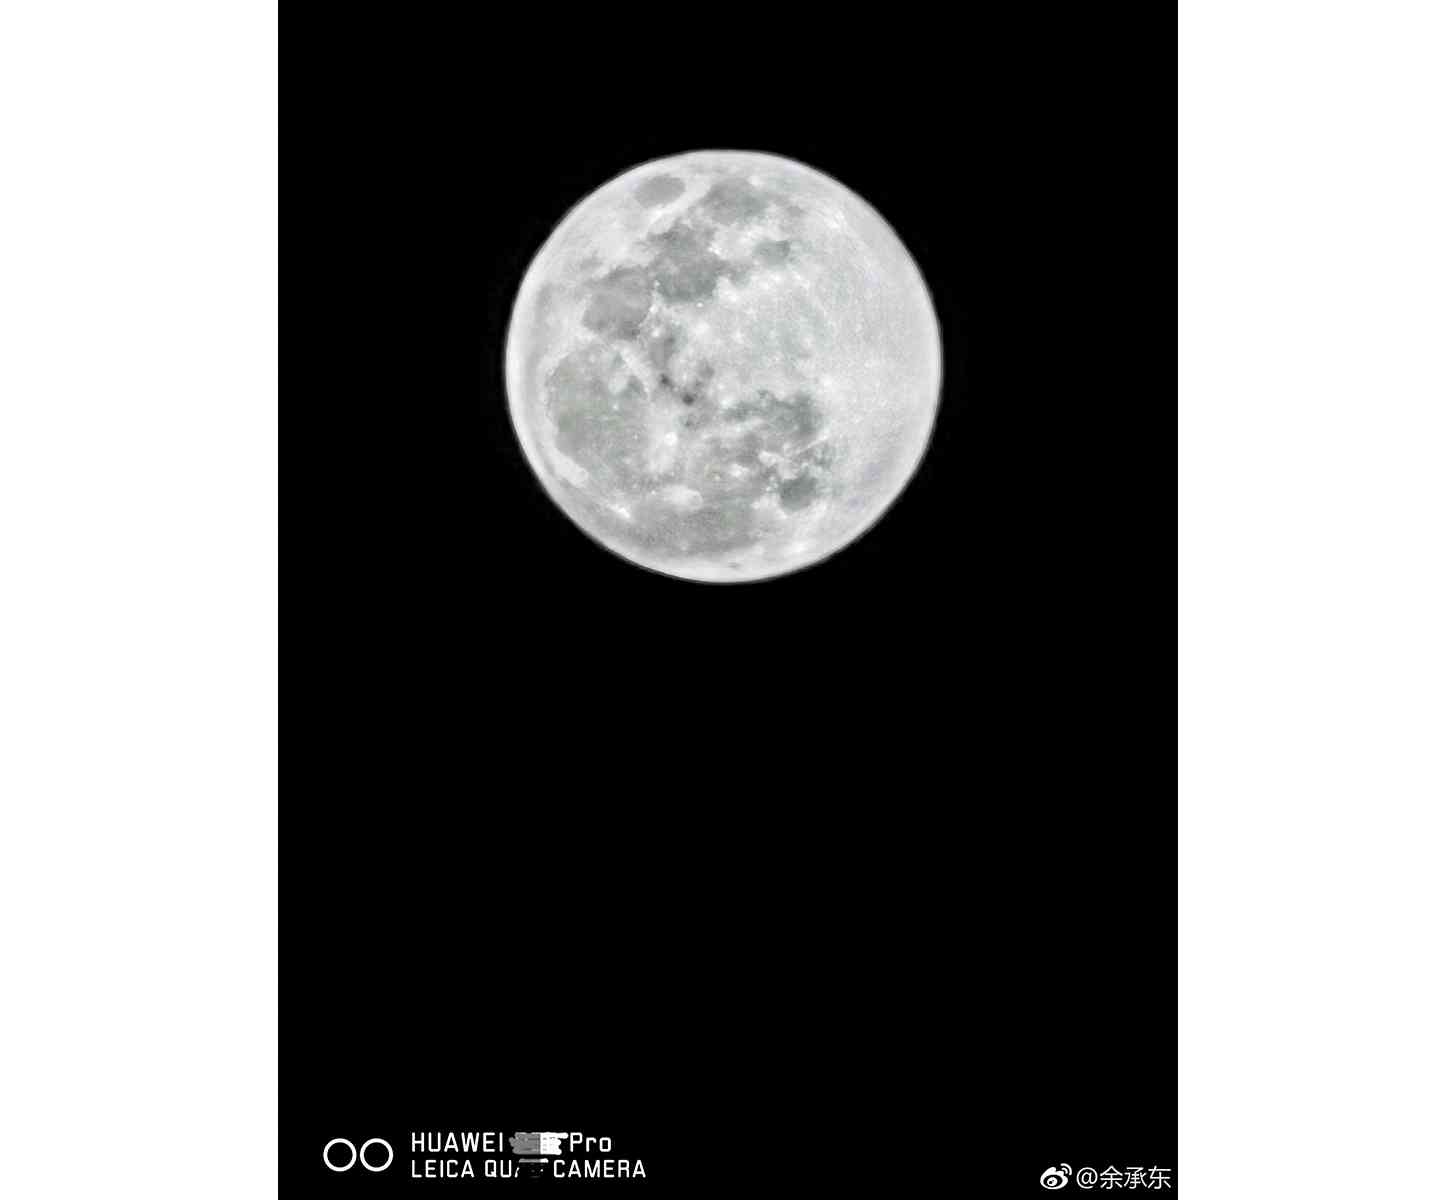 Huawei P30 Pro moon photo